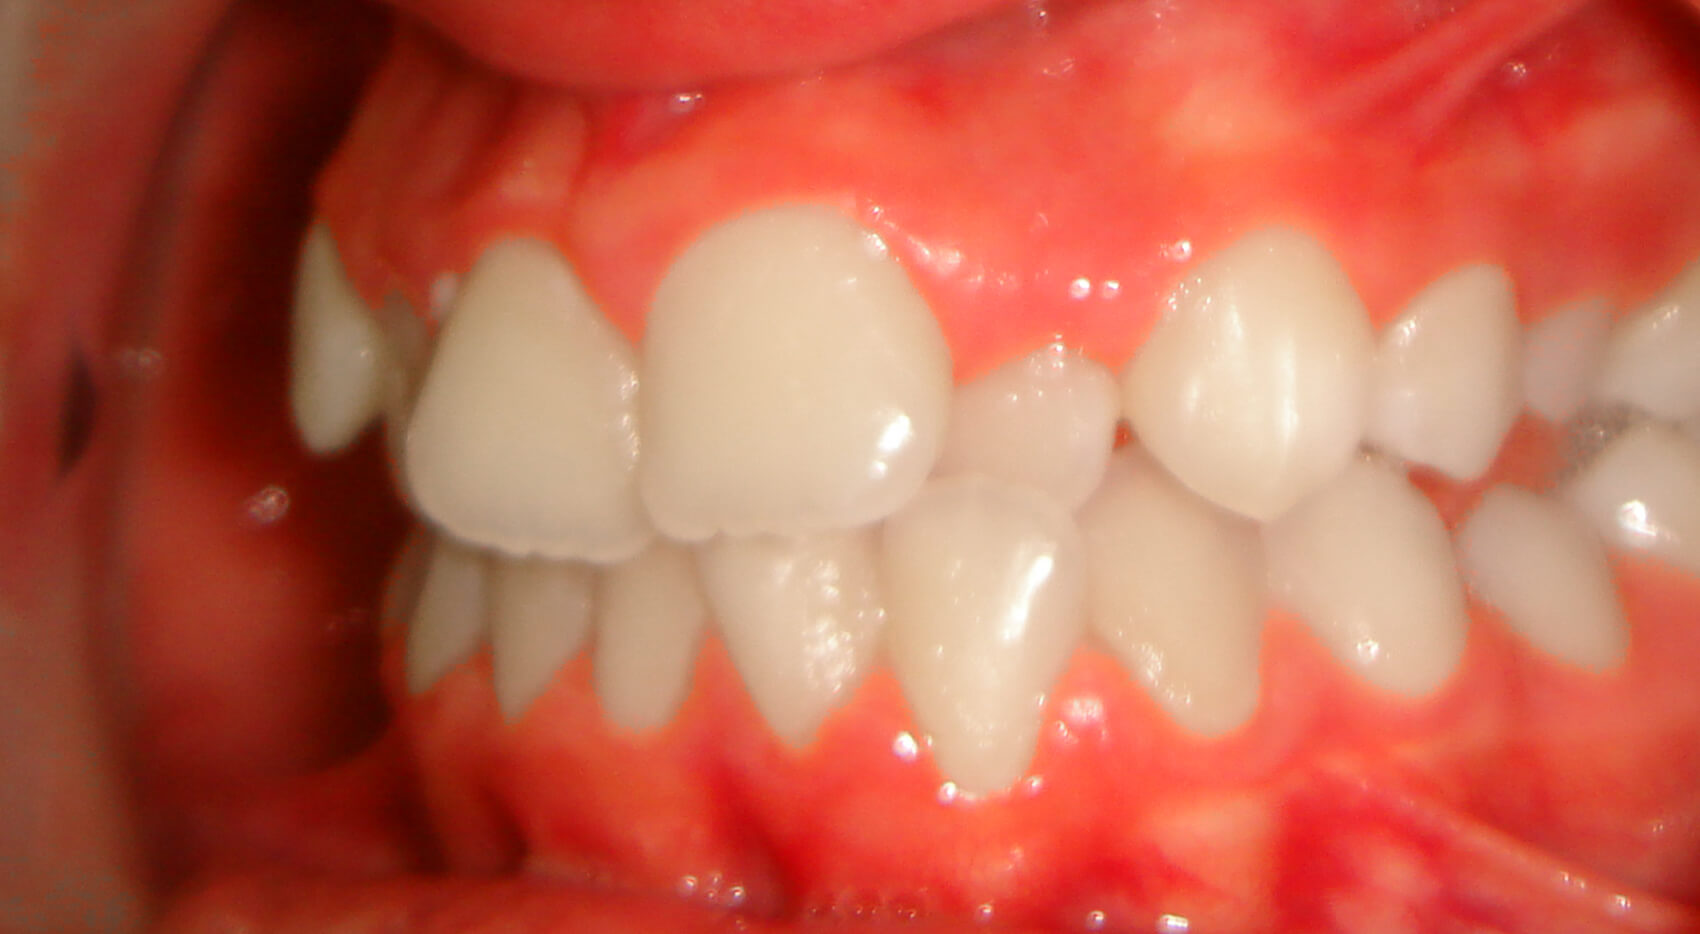 Ortodontia - Apinhamento moderado_GG_4